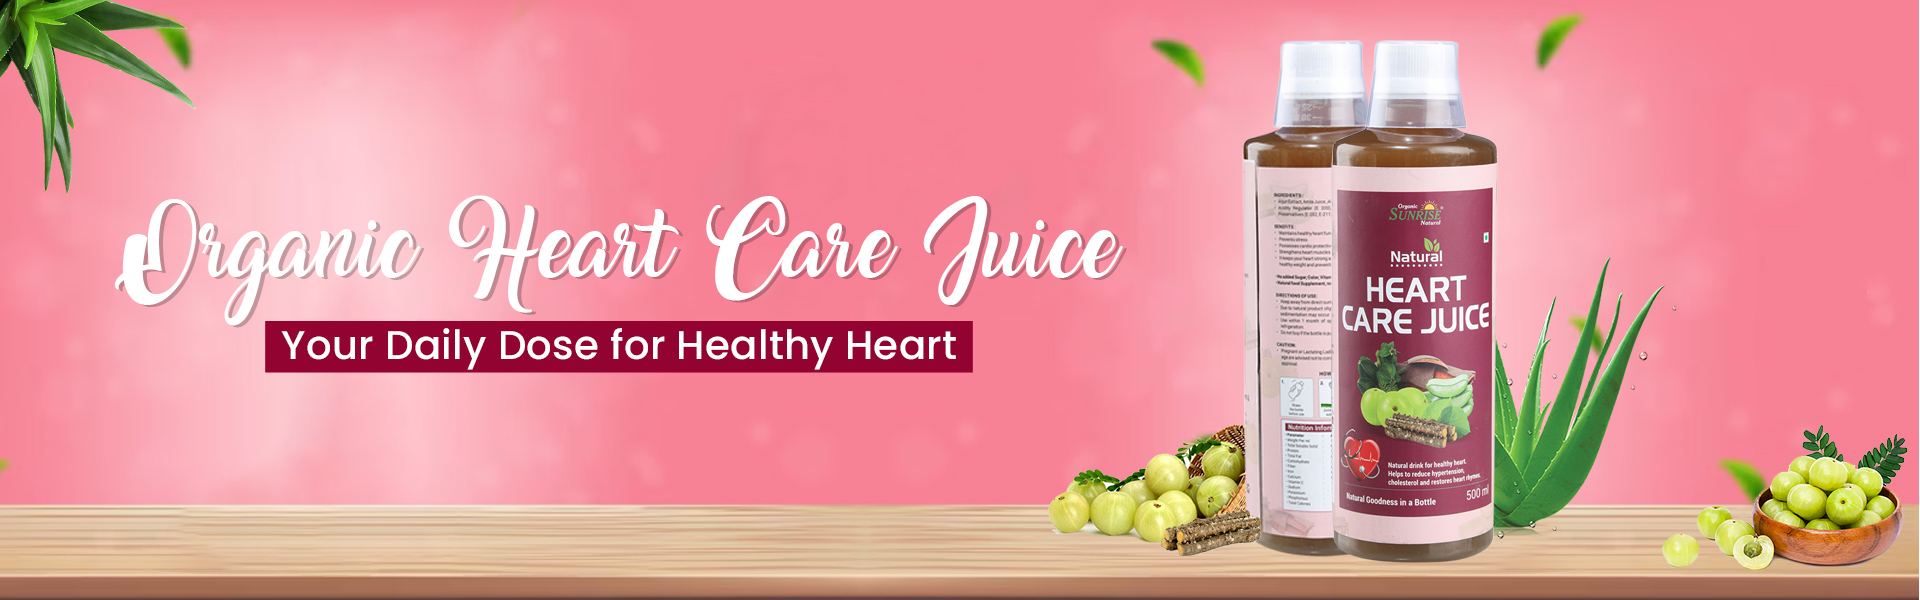 Organic Heart Care Juice 